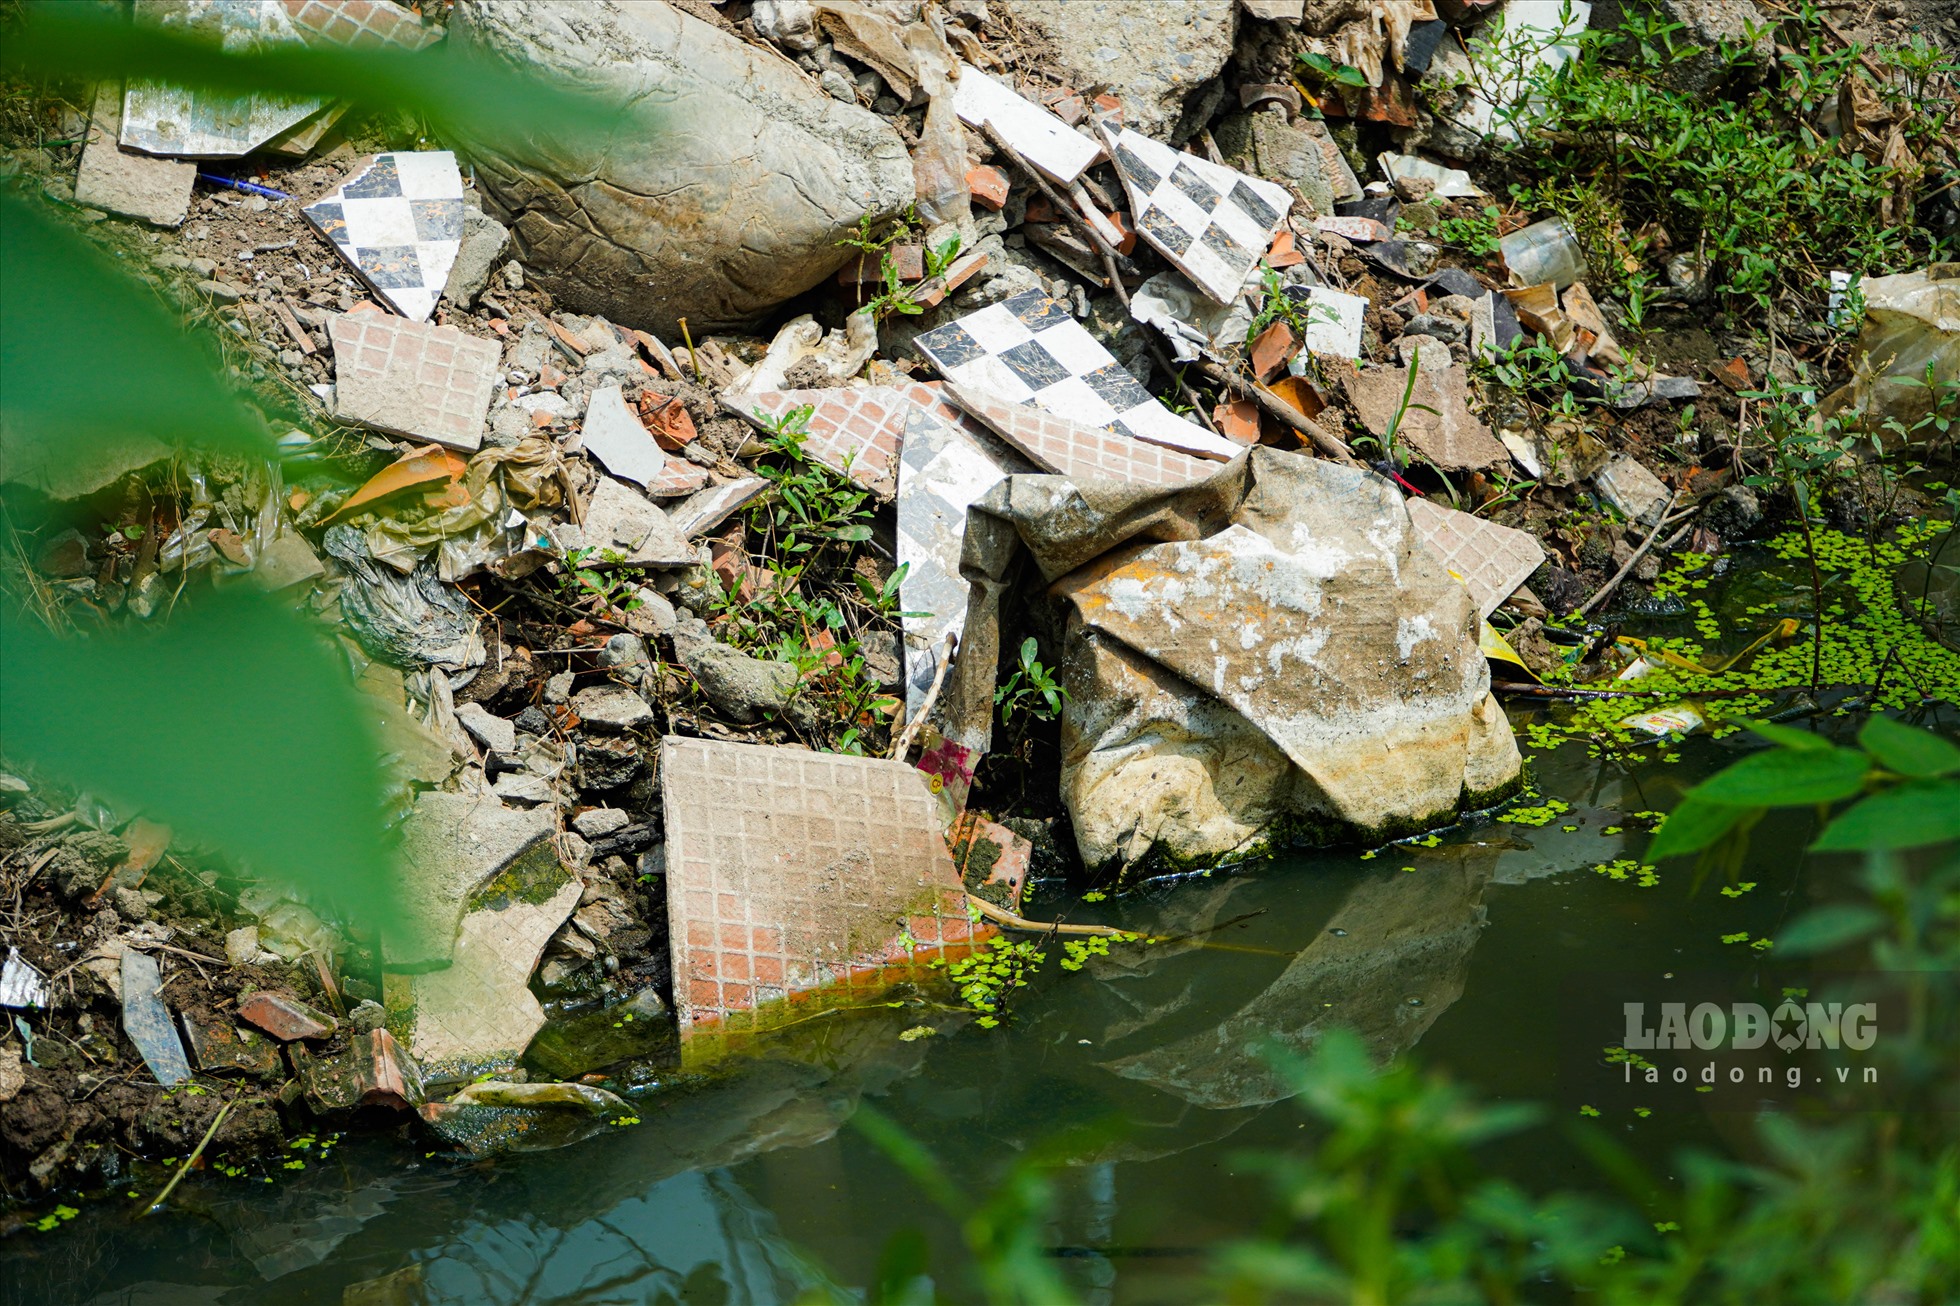 Tại con mương thoát nước trải dài hơn 100 mét nằm trong ngõ 115 phố Trần Cung (Cầu Giấy), các loại rác thải sinh hoạt, rác thải xây dựng, phế thải vứt đầy  hai bên bờ  mương.